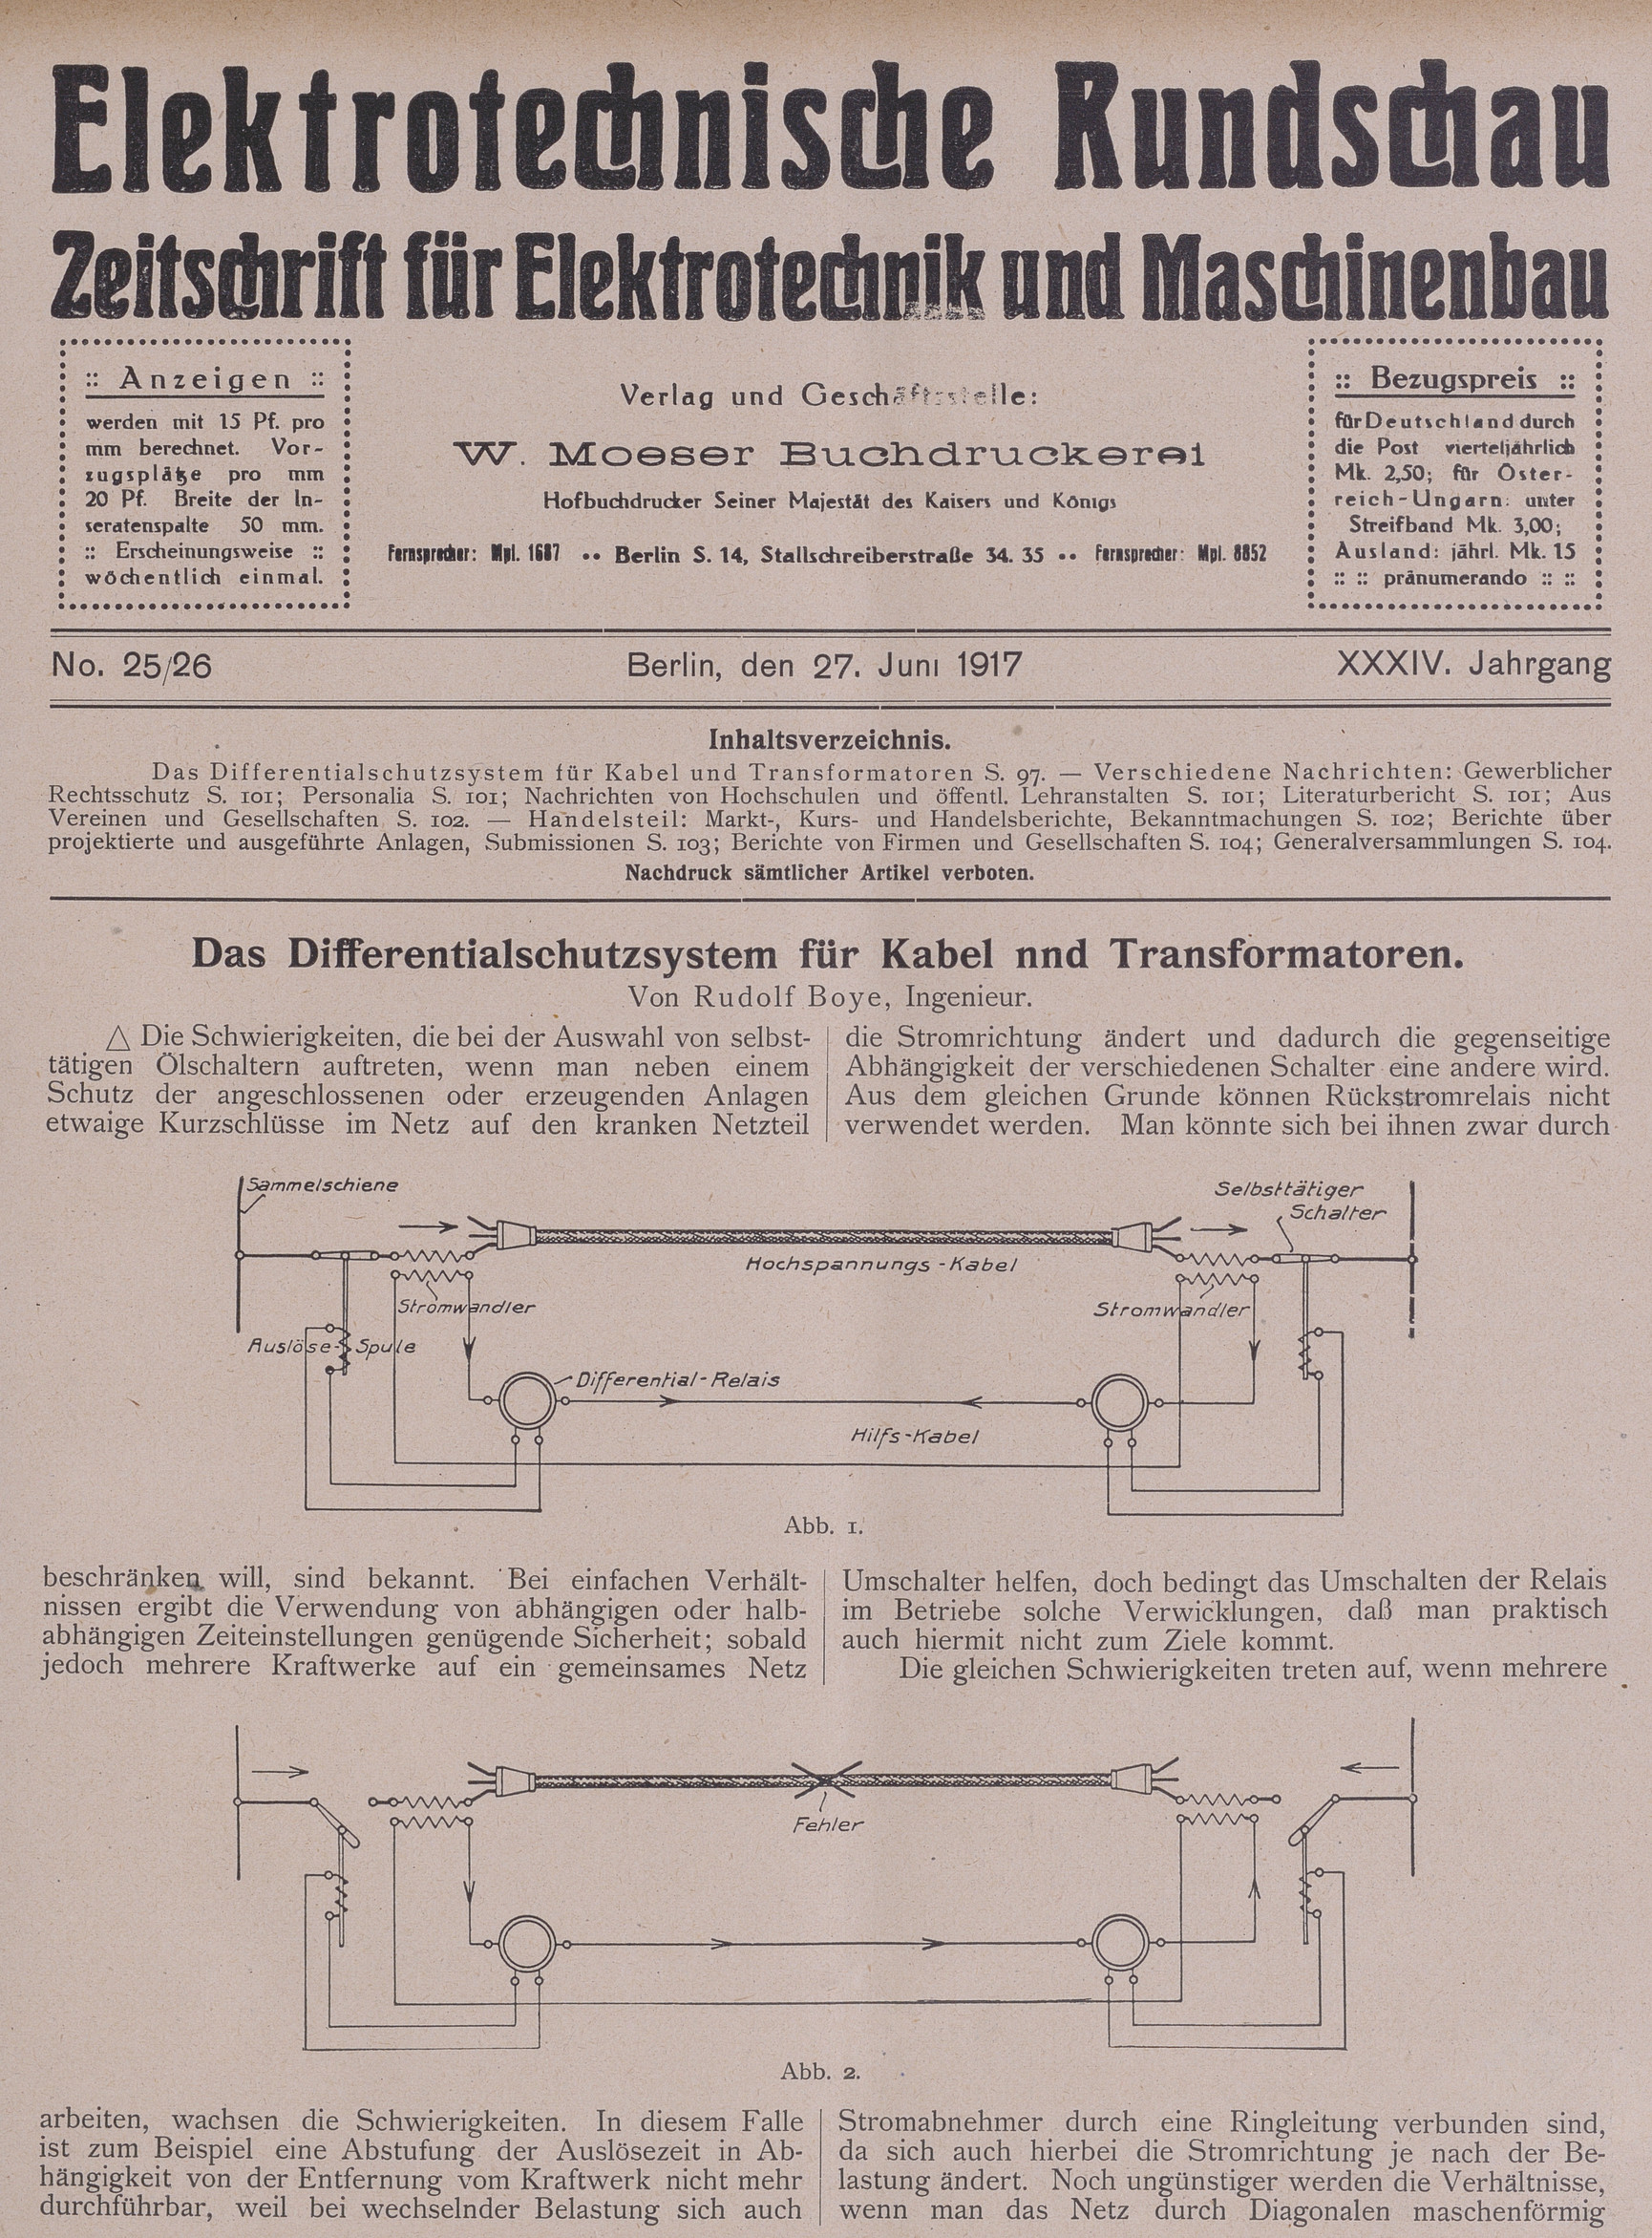 Elektrotechnische Rundschau : Zeitschrift für Elektrotechnik und Maschinenbau + Polytechnische Rundschau, No. 25/26, XXXIV. Jahrgang